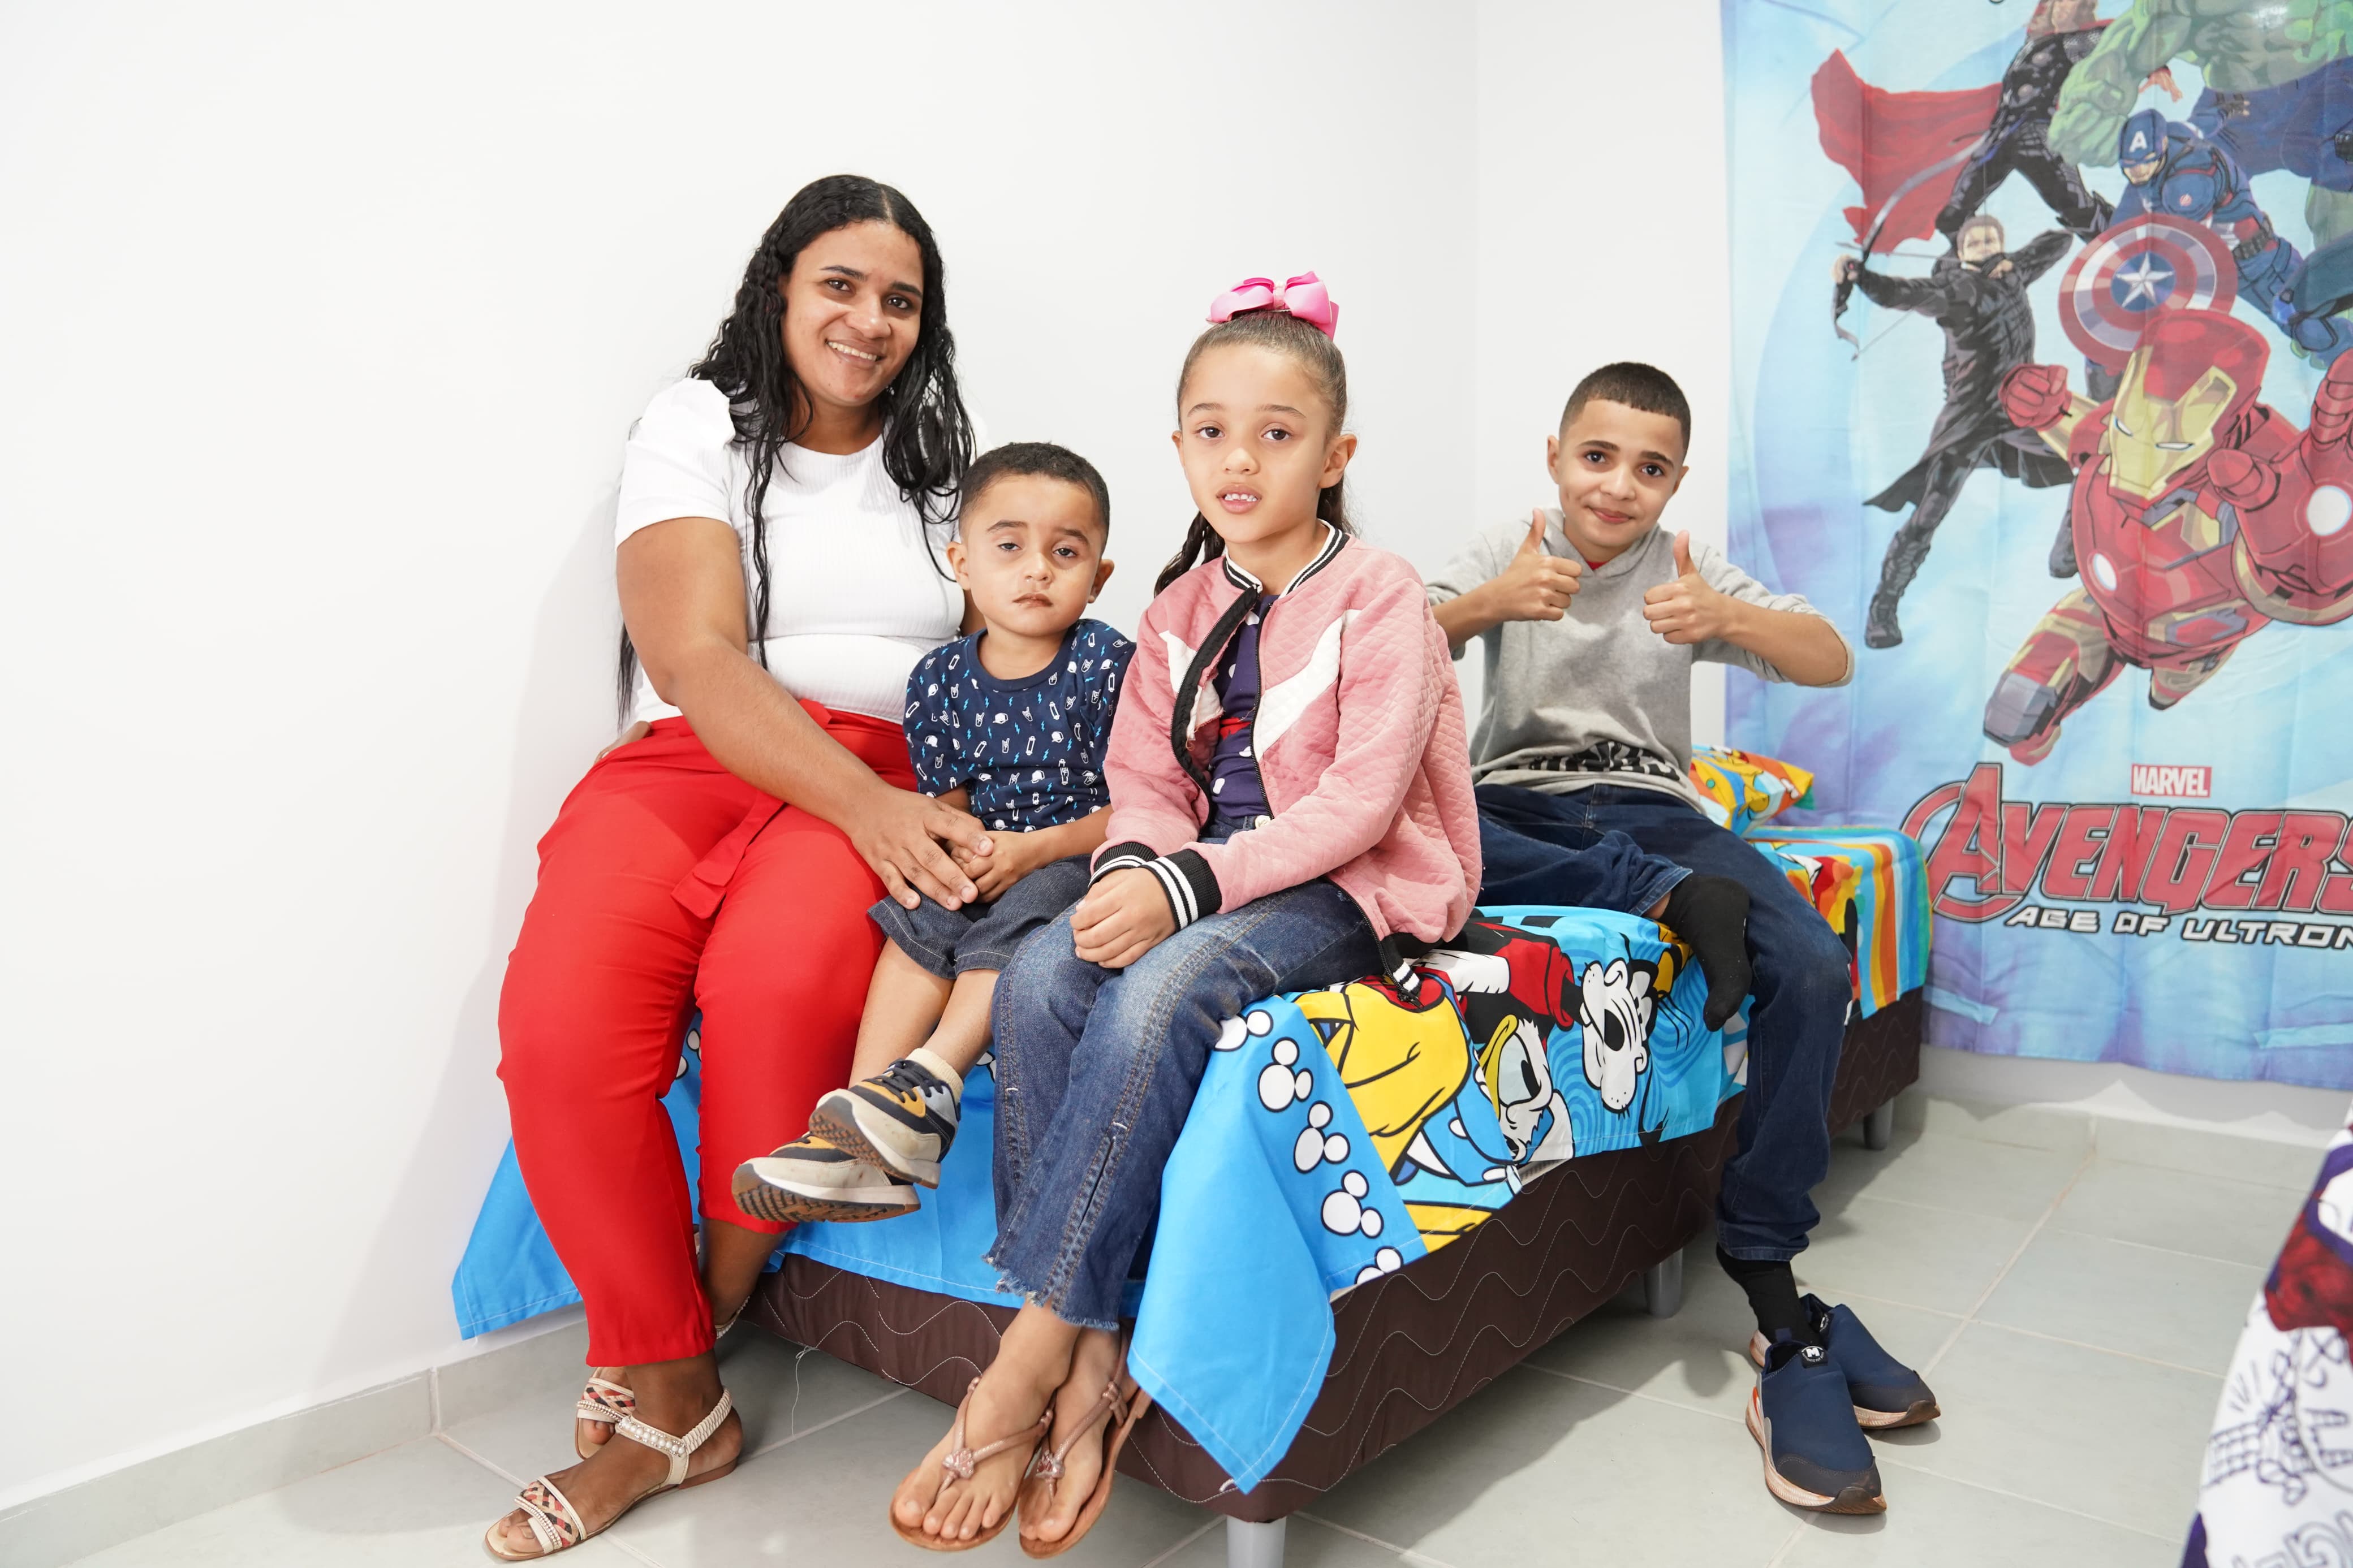 Patrícia da Silva Souza, 29 anos, e seus filhos ganharam uma casa a custo zero.